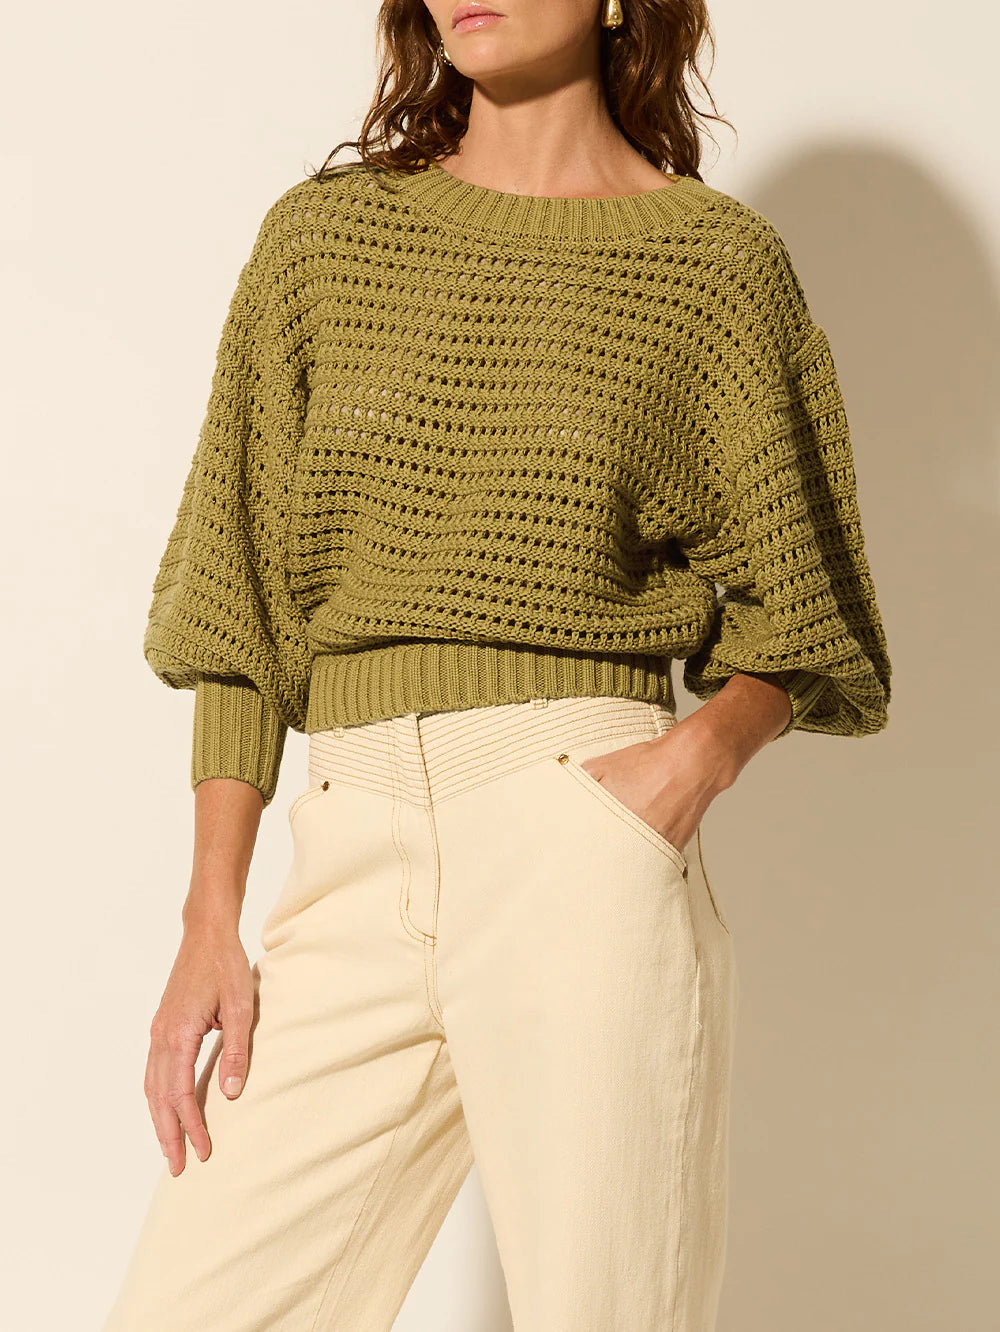 KIVARI - Lina Knit Sweater - Khaki